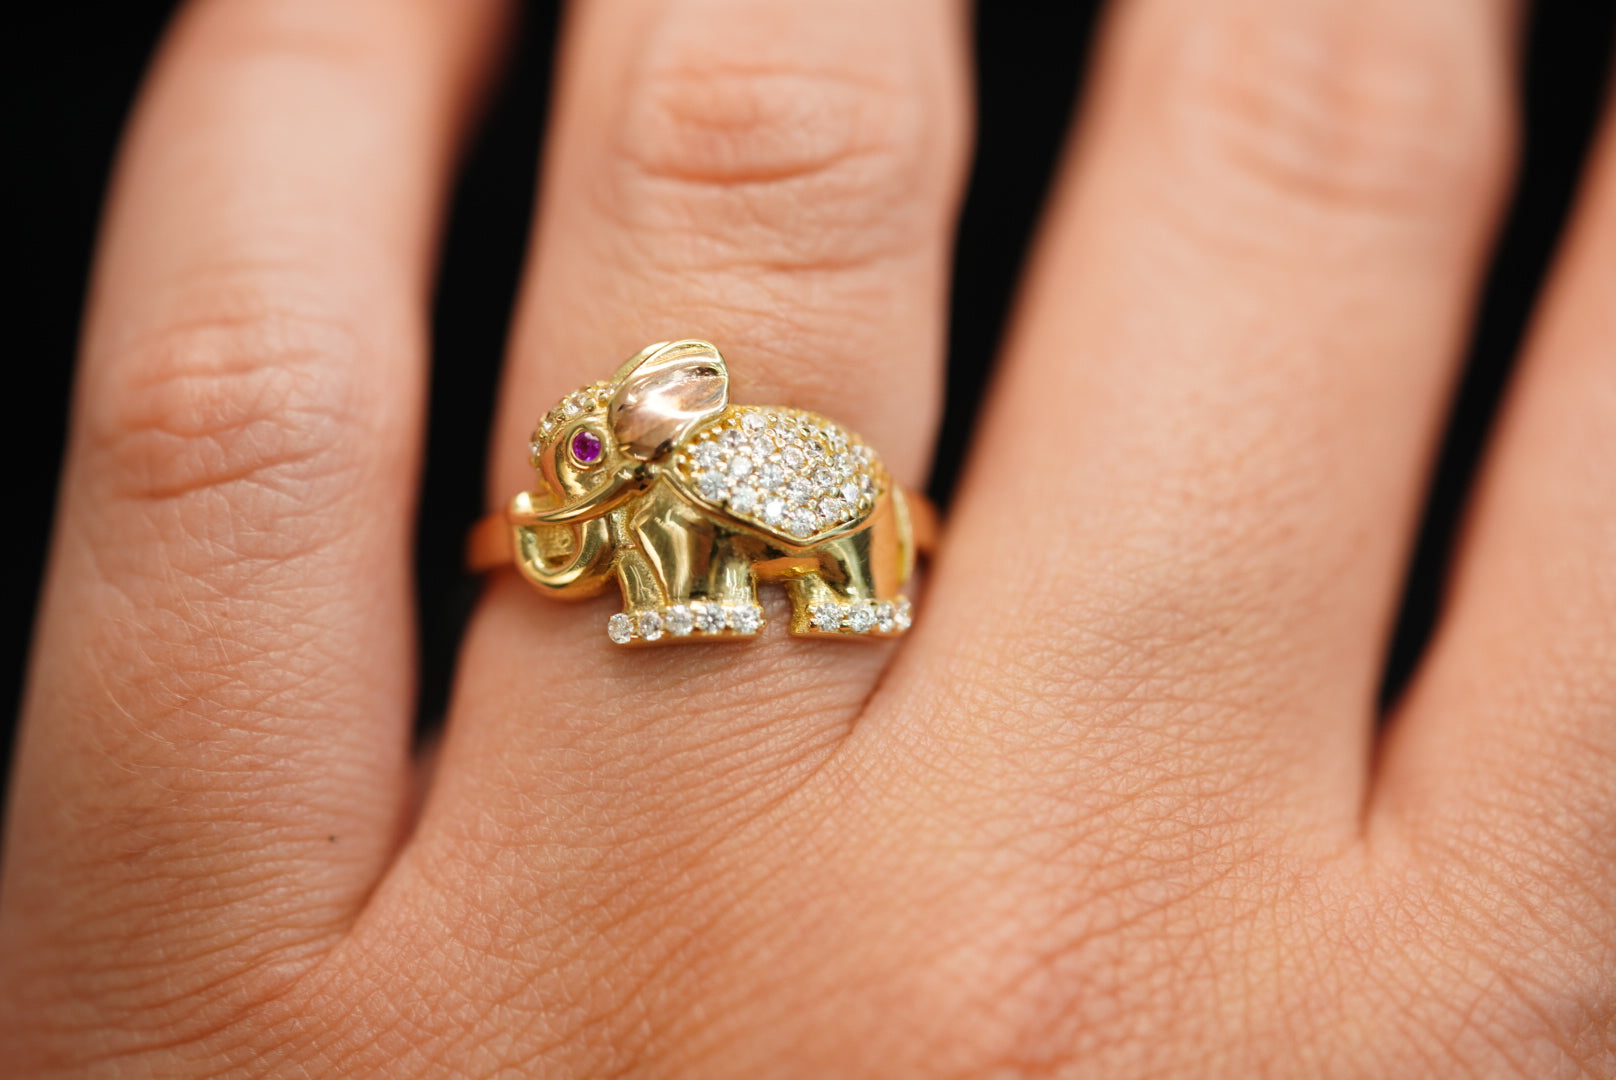 10k Elephant Ring